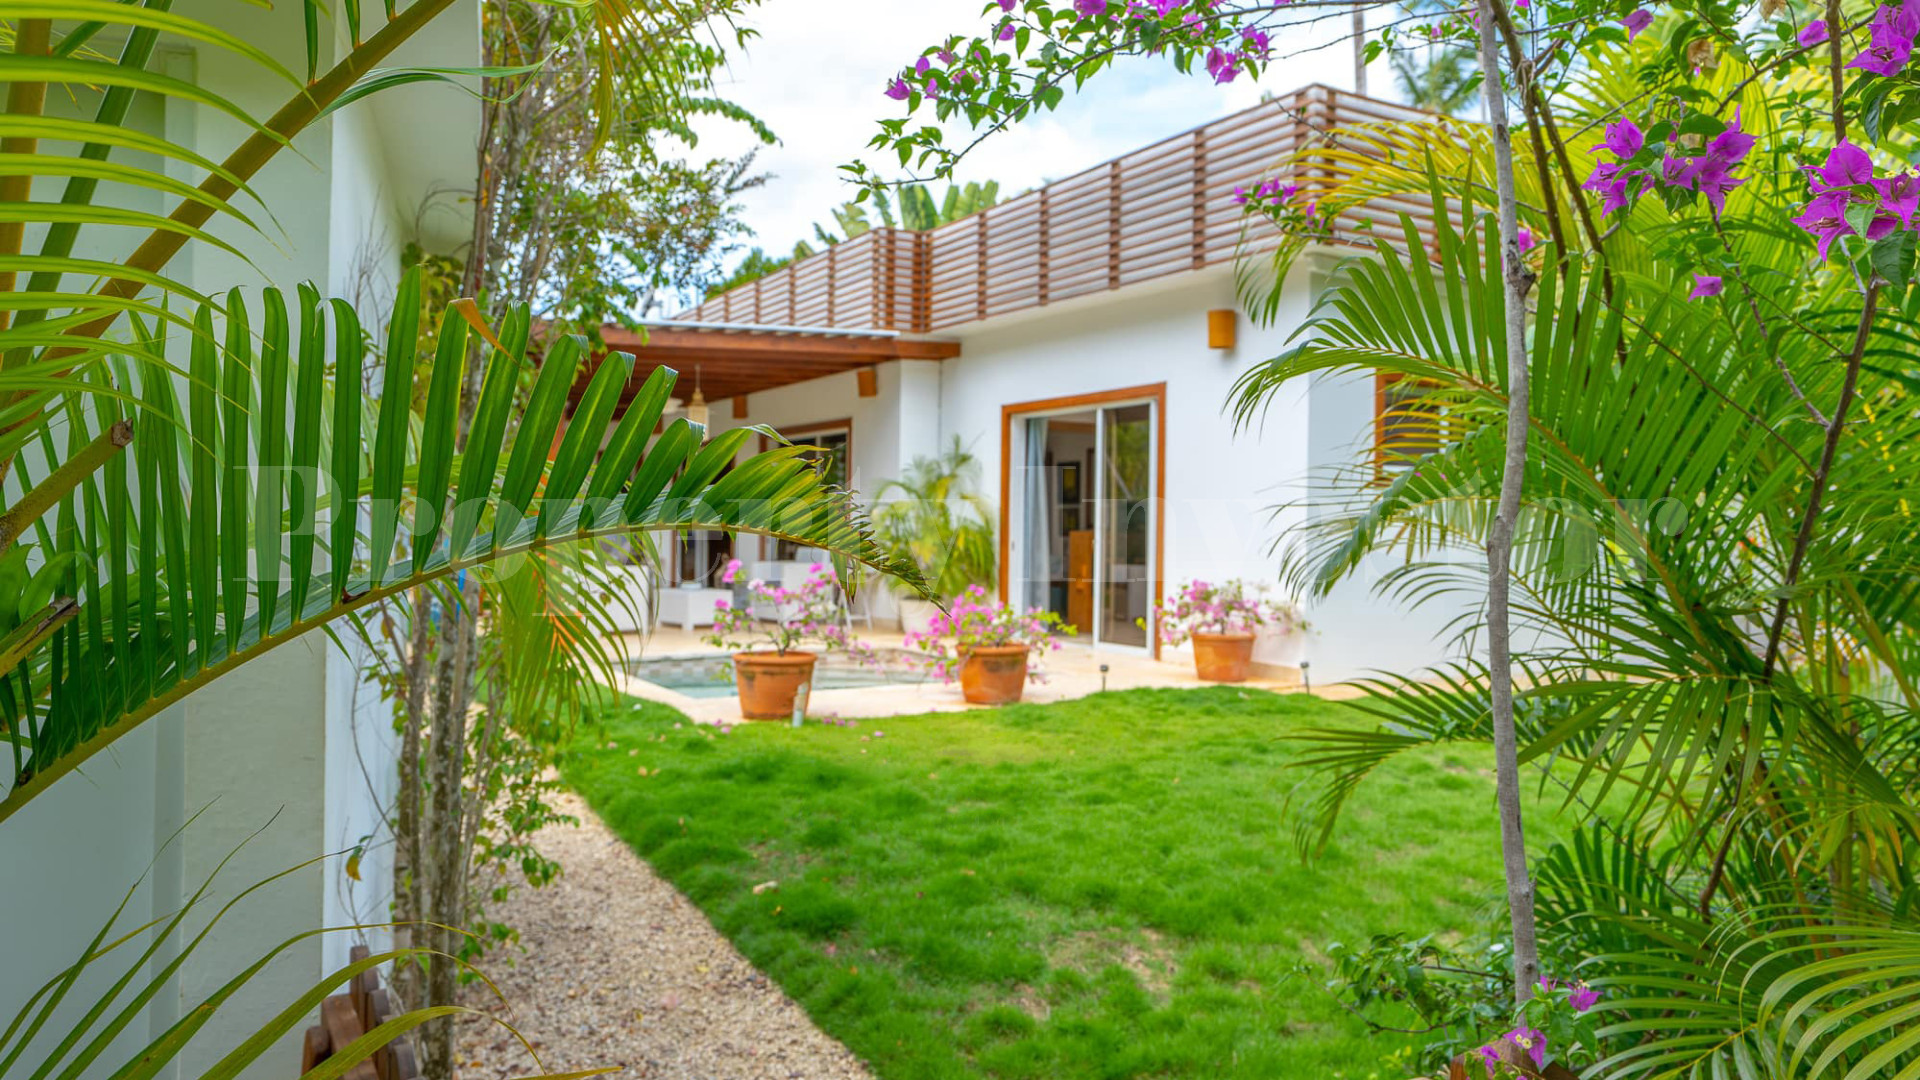 Magnificent 5 Bedroom Private Colonial Style Beachfront Villa for Sale in La Esperanza, Las Terrenas